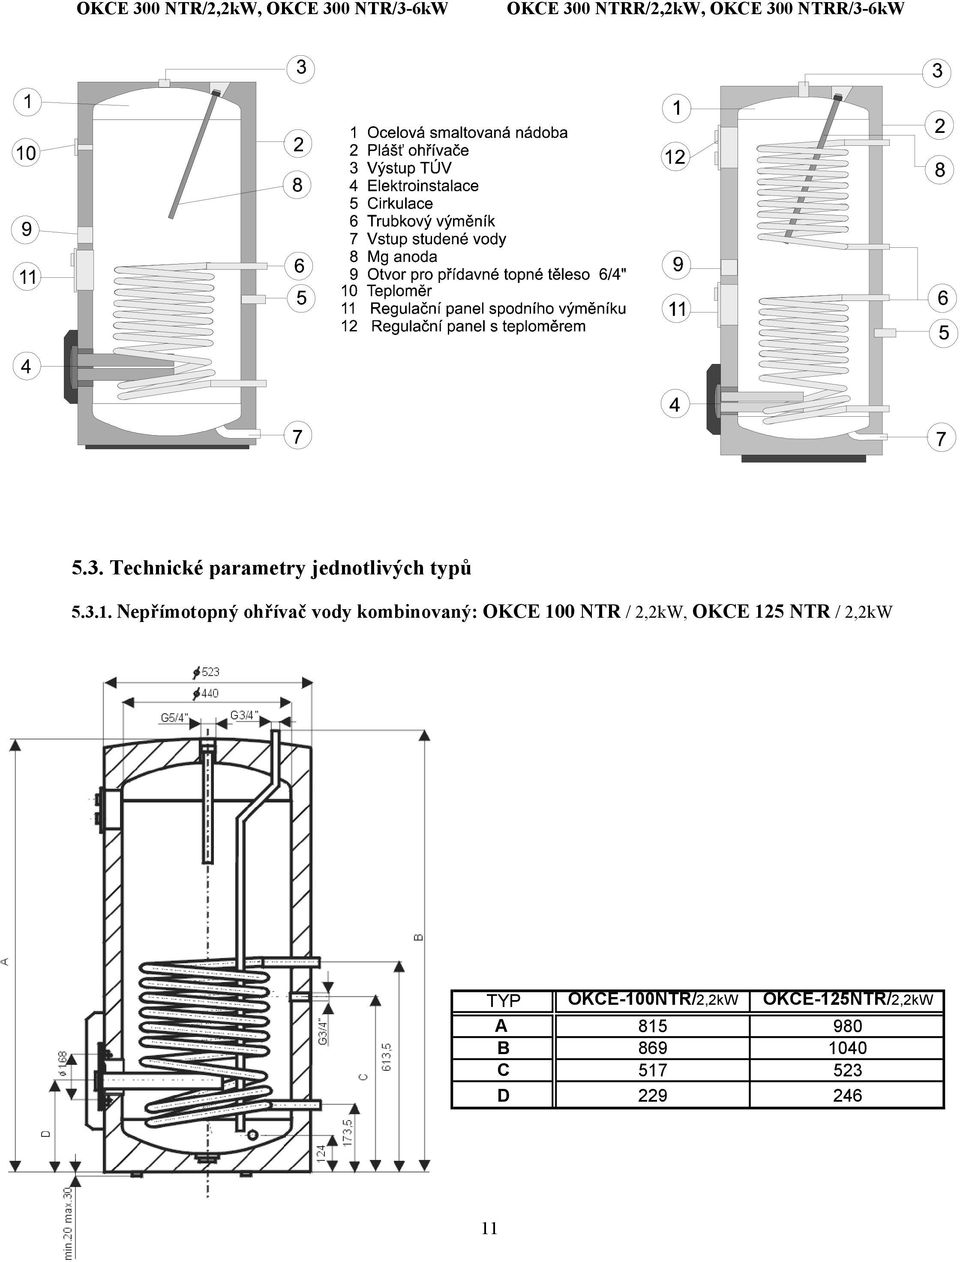 Nepřímotopný ohřívač vody kombinovaný: OKCE 100 NTR / 2,2kW, OKCE 125 NTR